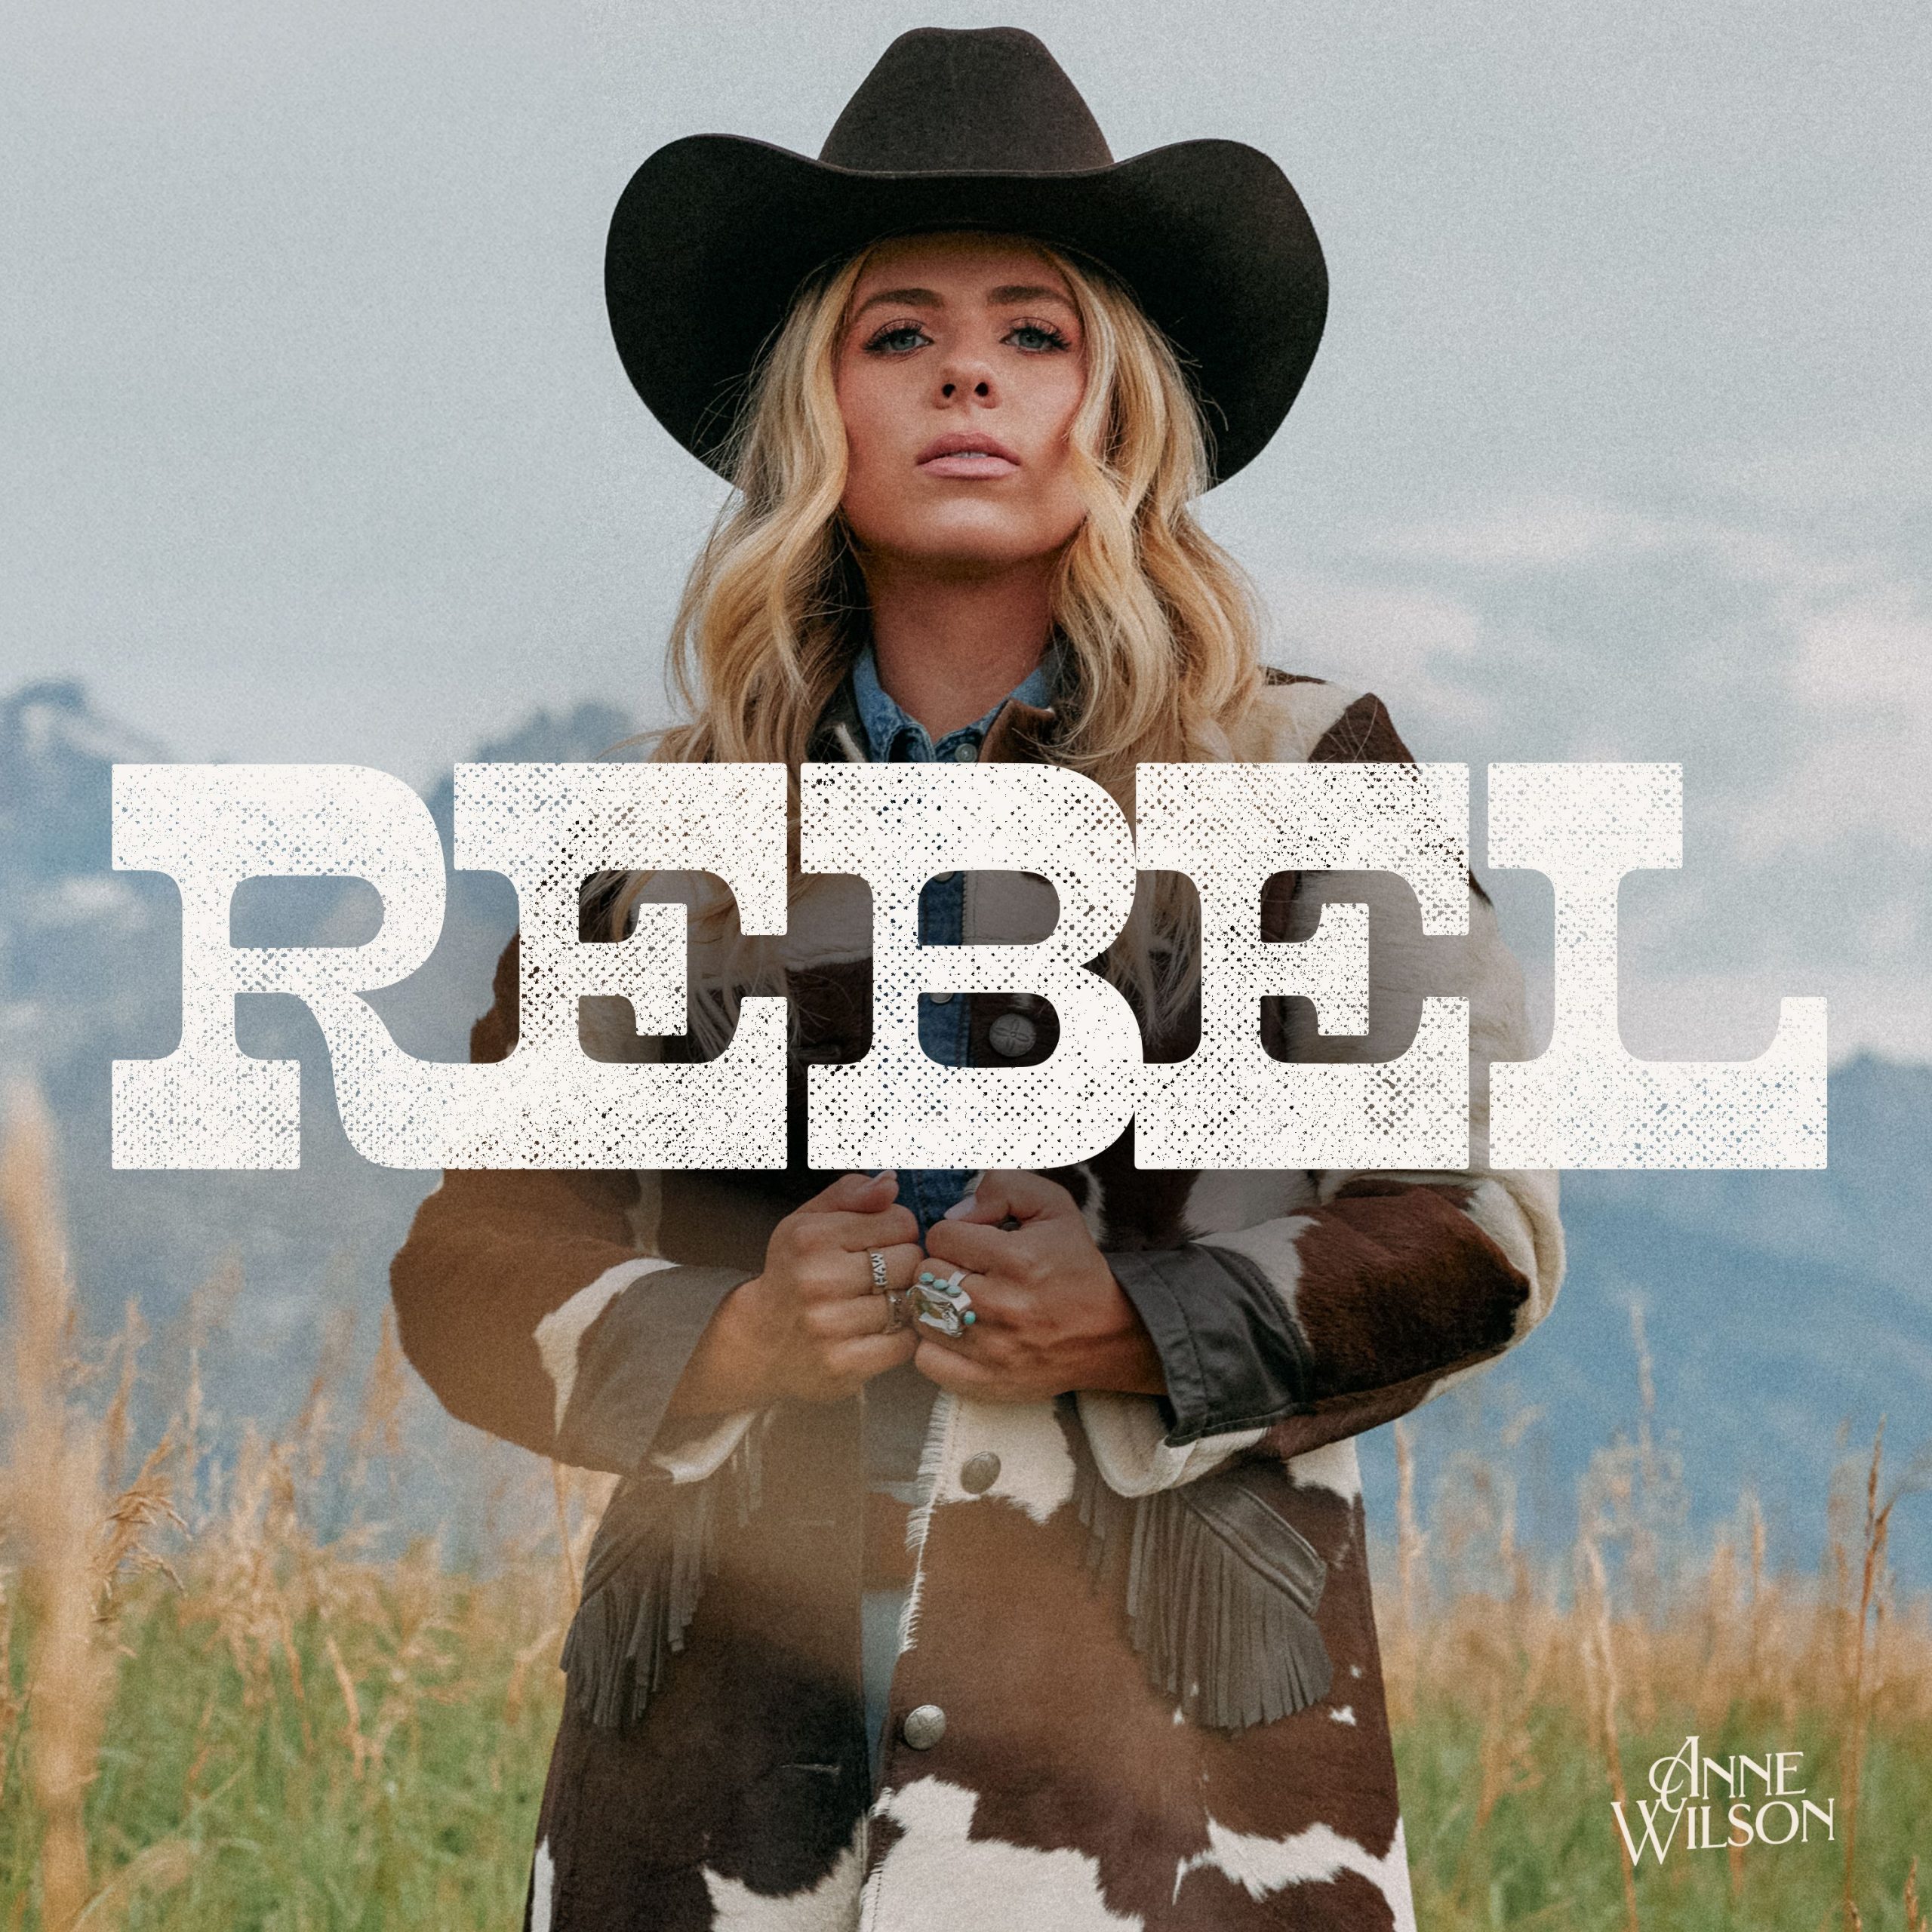 Anne Wilson Announces New Album, REBEL, Available April 19